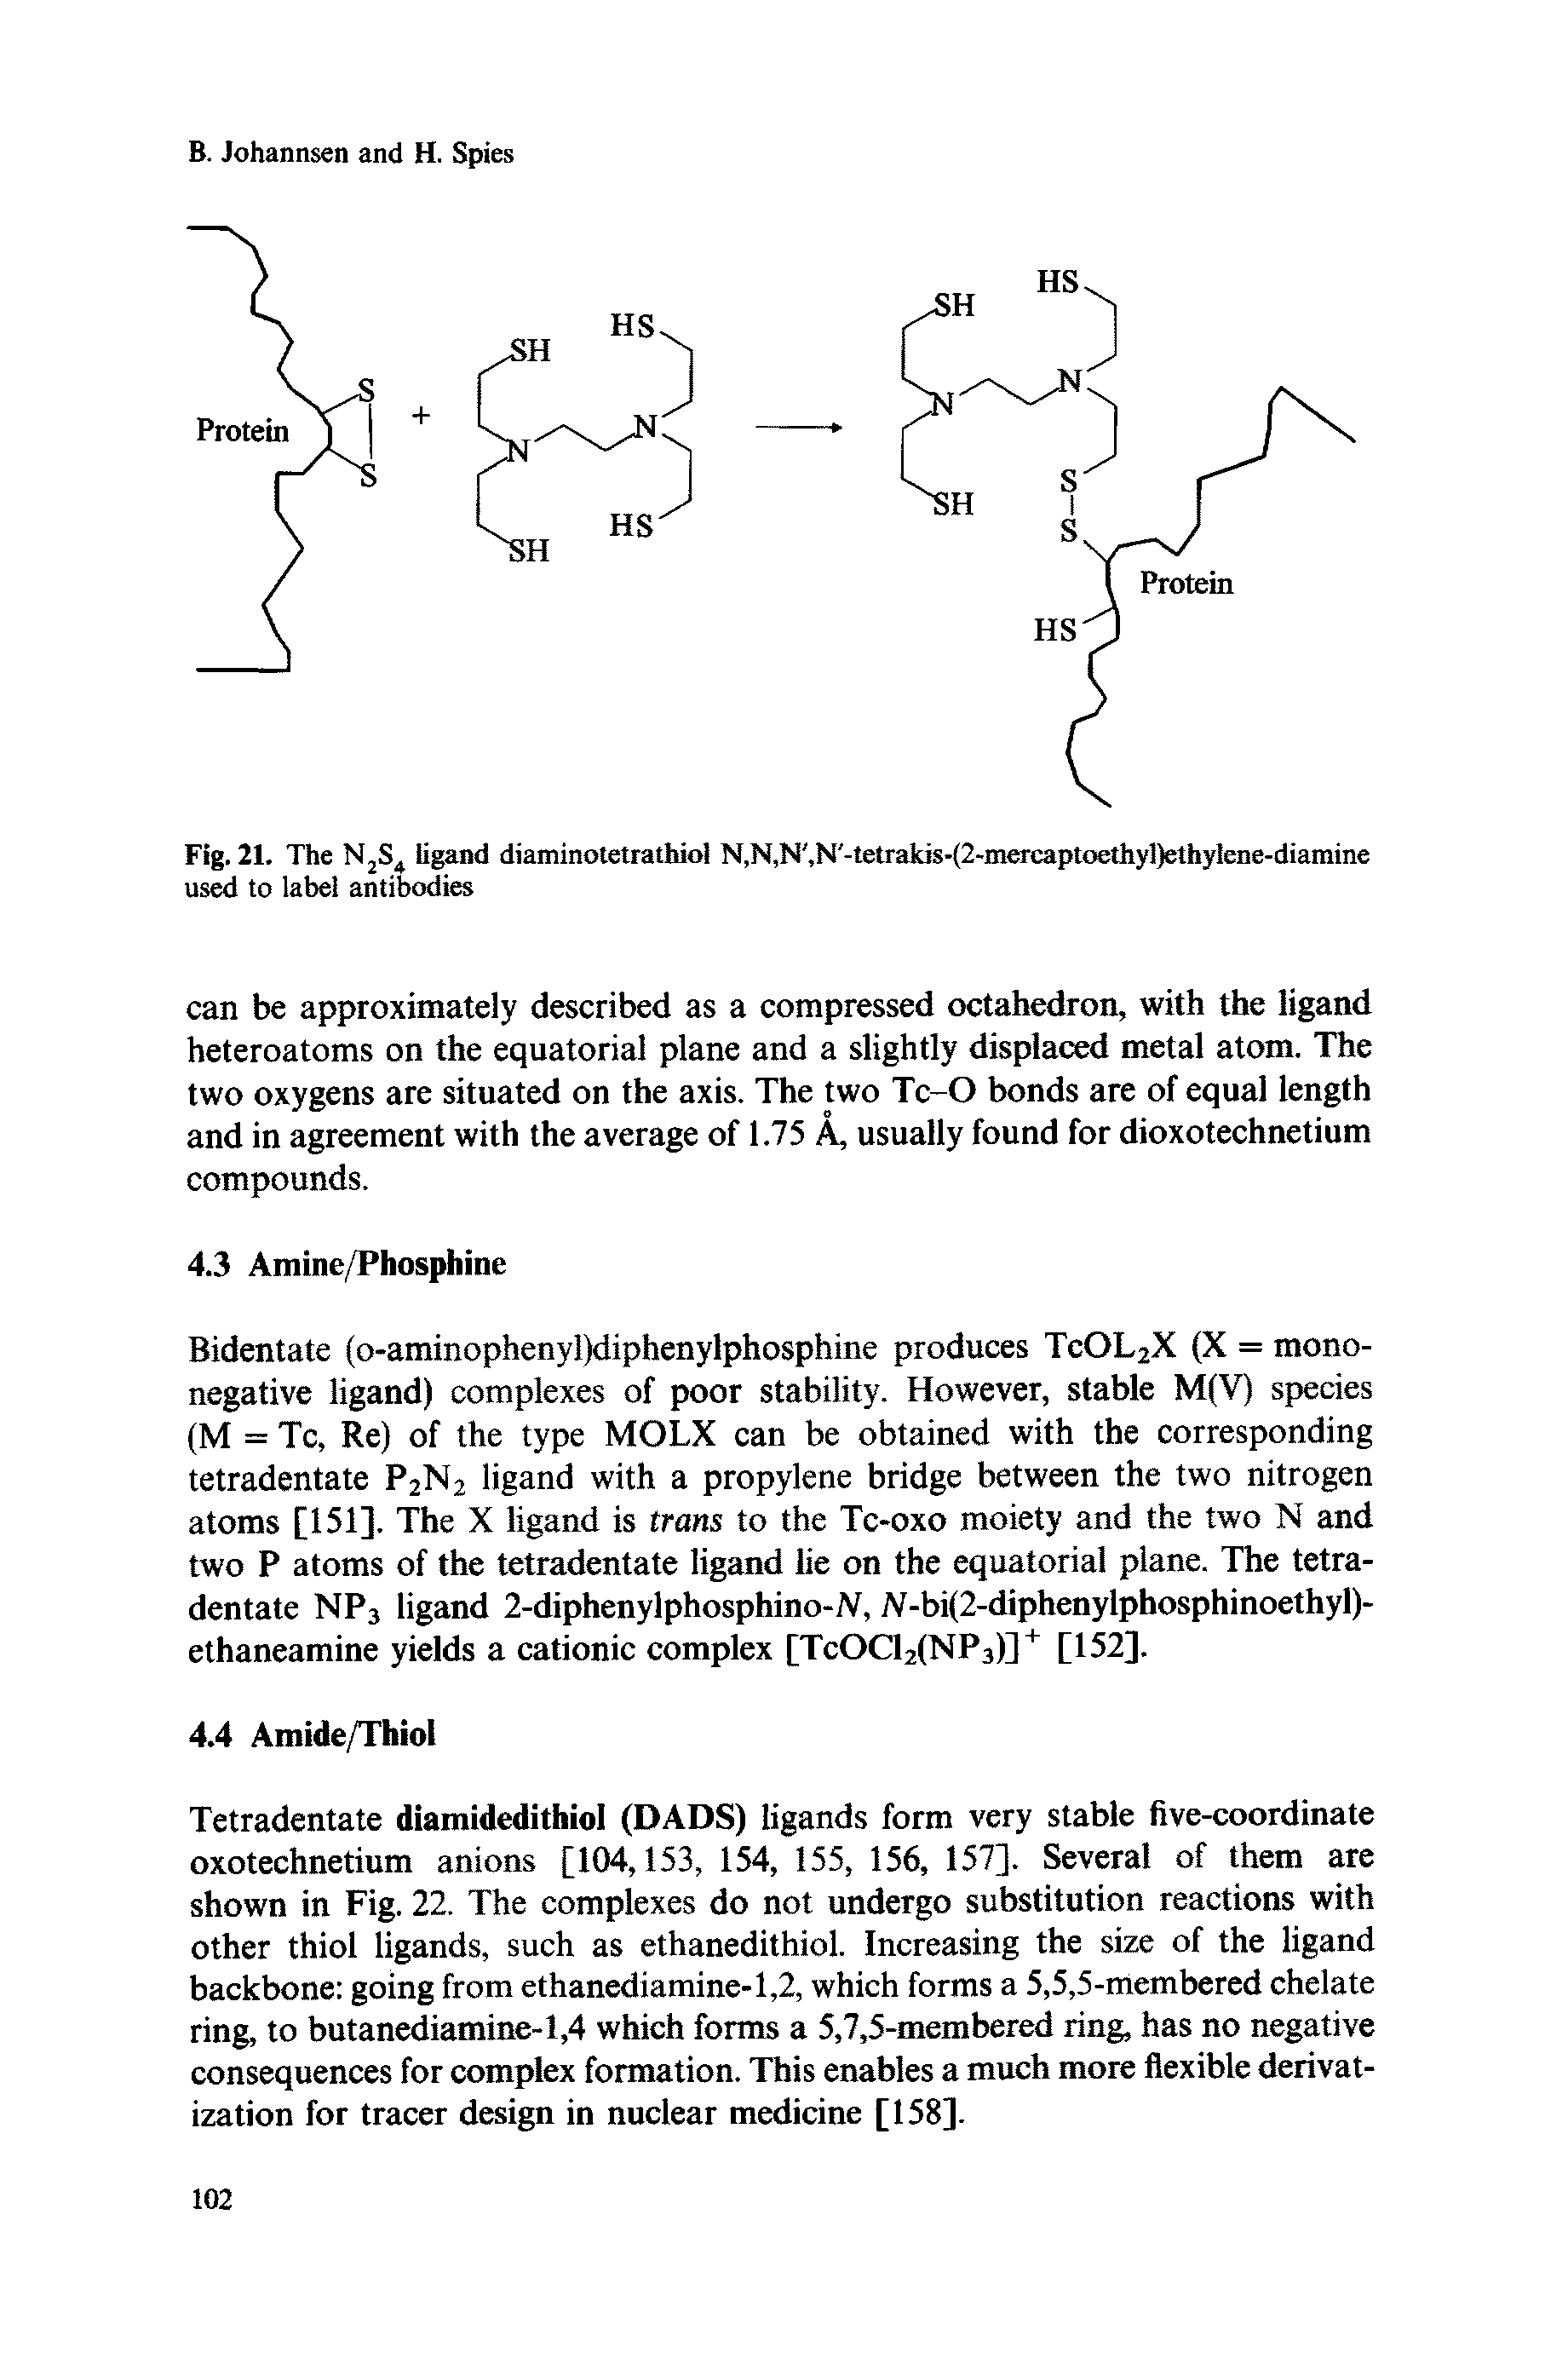 Fig. 21. The N2S4 ligand diaminotetrathiol N,N,N, N -tetrakis-(2-mercaptoethyl)ethylene-diamme used to label antibodies...